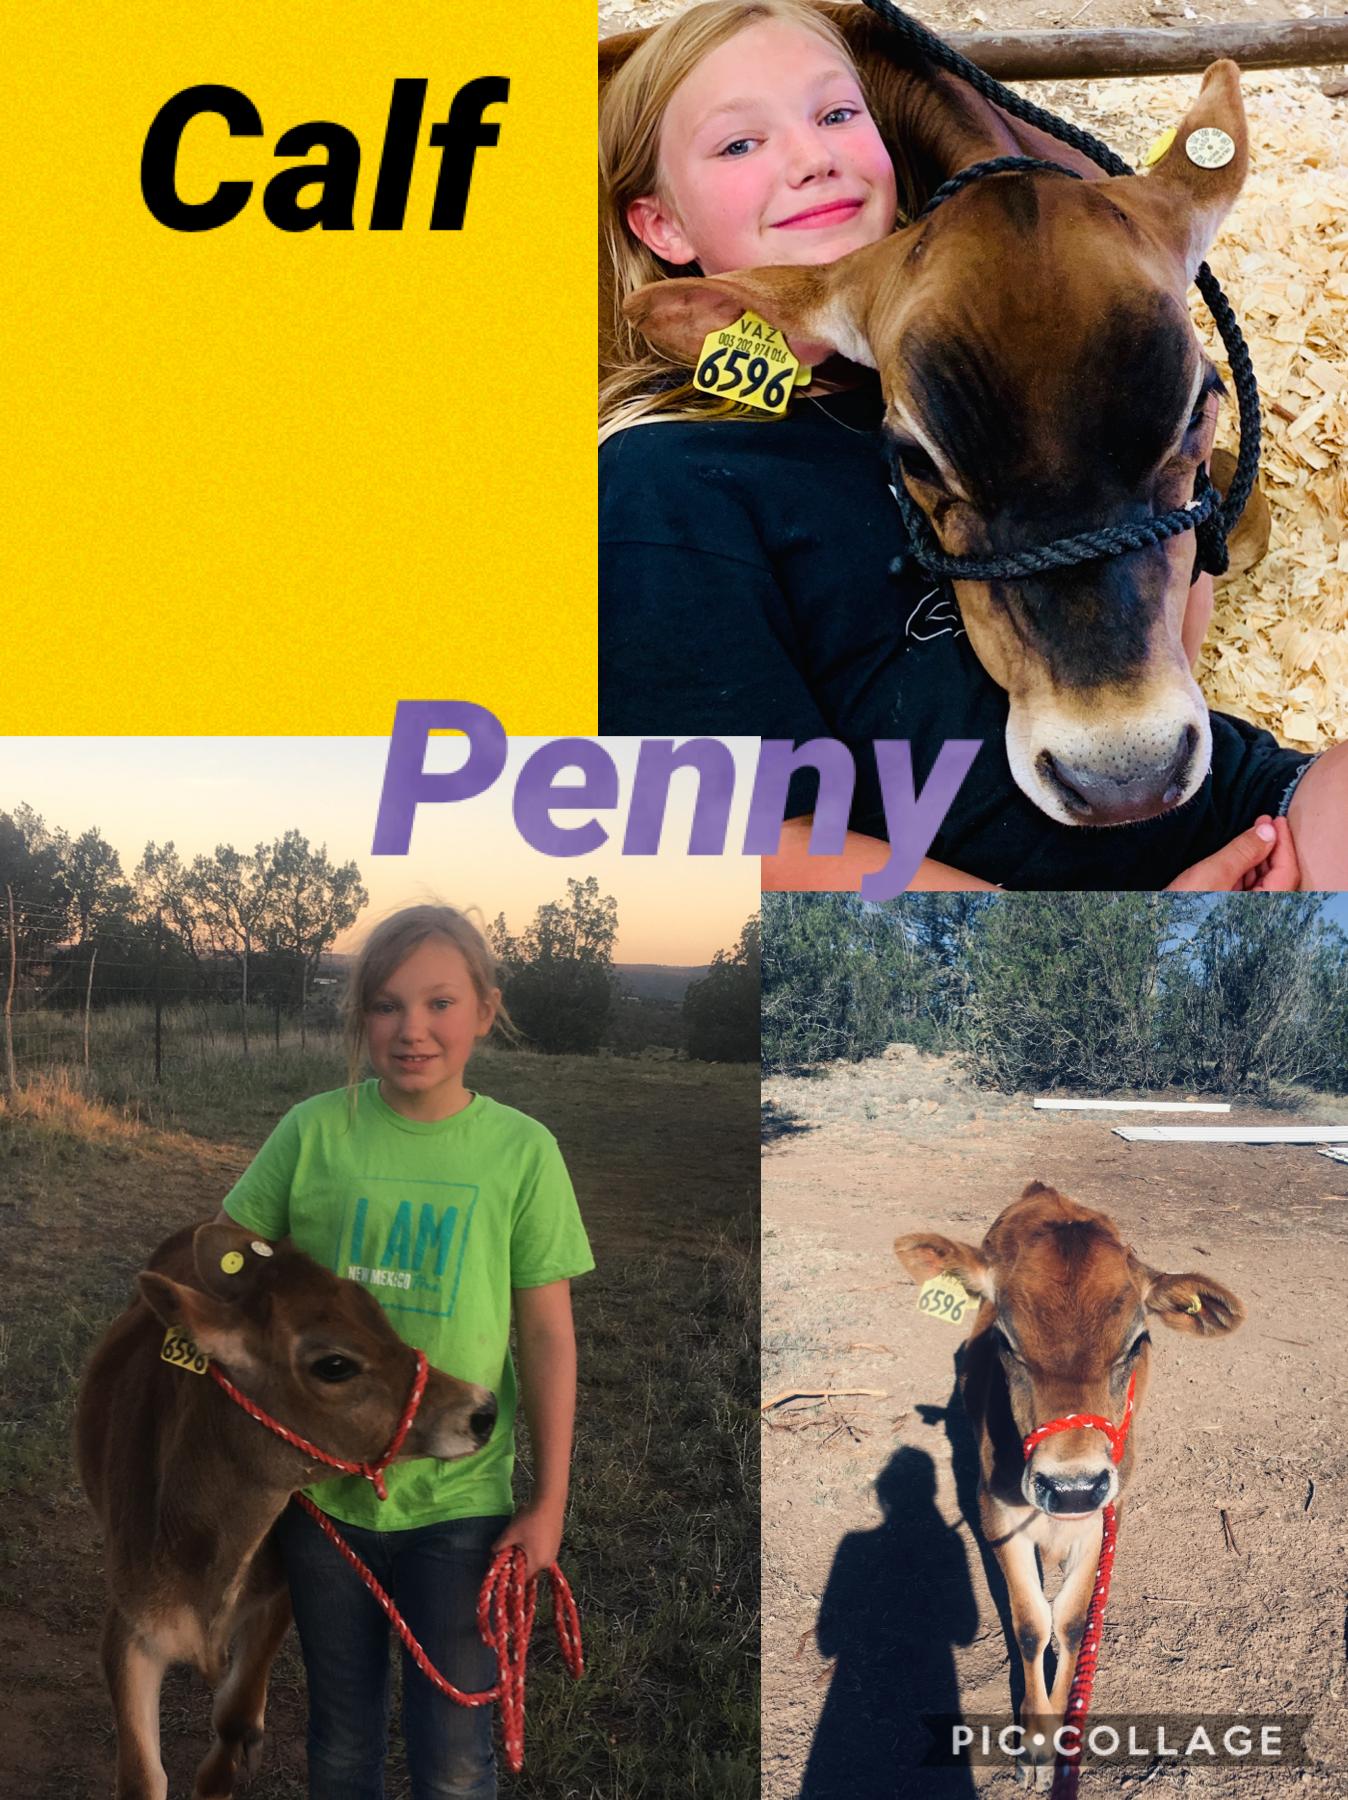 Penny 😭😭😭😭😭😭 Calf!!!